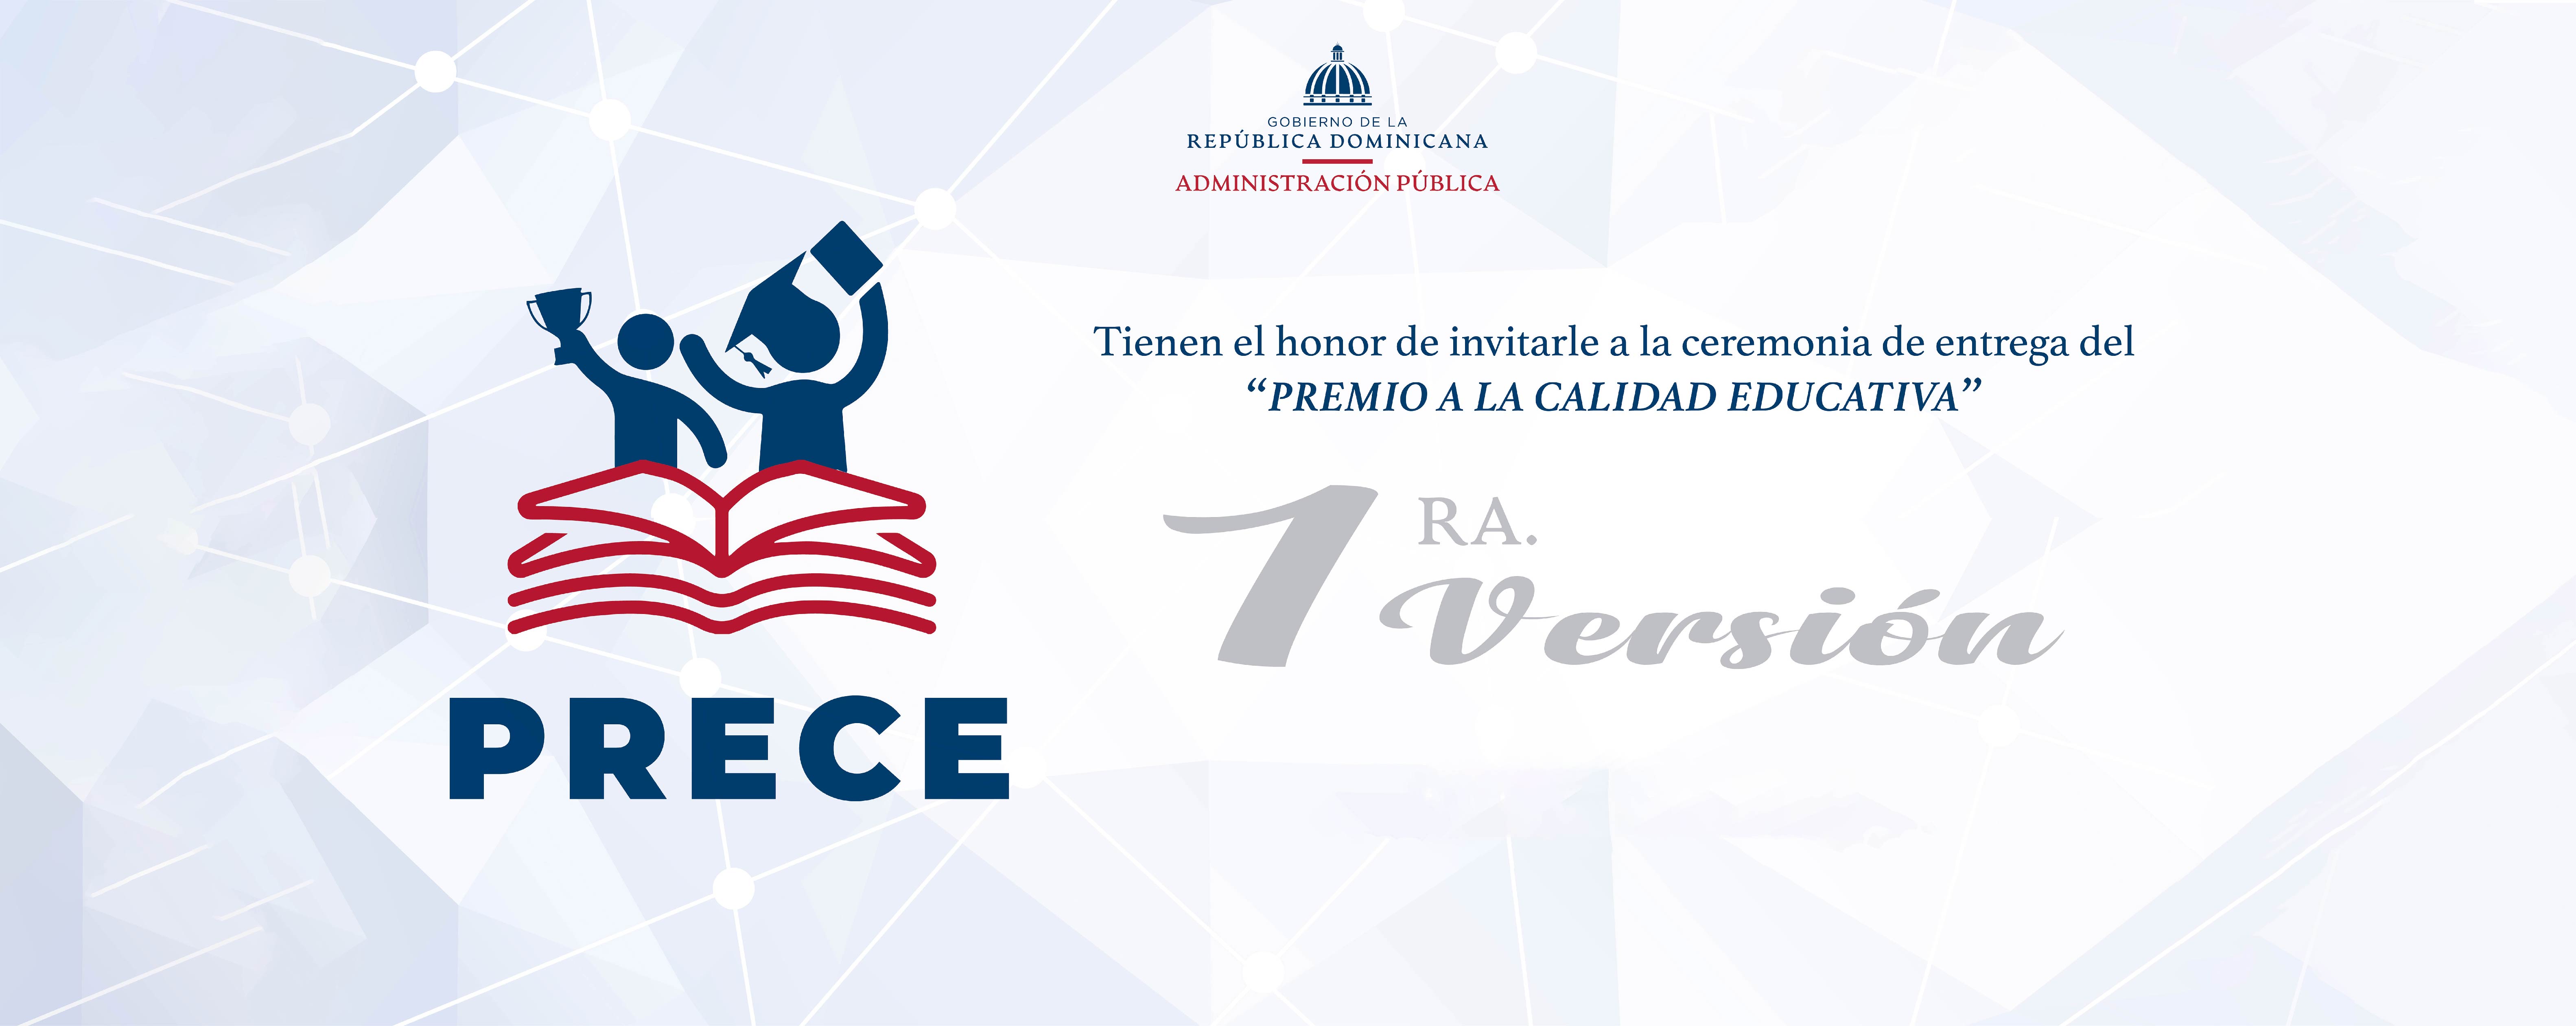 Invitación: ceremonia Premio a la calidad Educativa 1era versión. 30 noviembre, 2:00 p.m. Salón Ámbar Hotel Dominican Fiesta